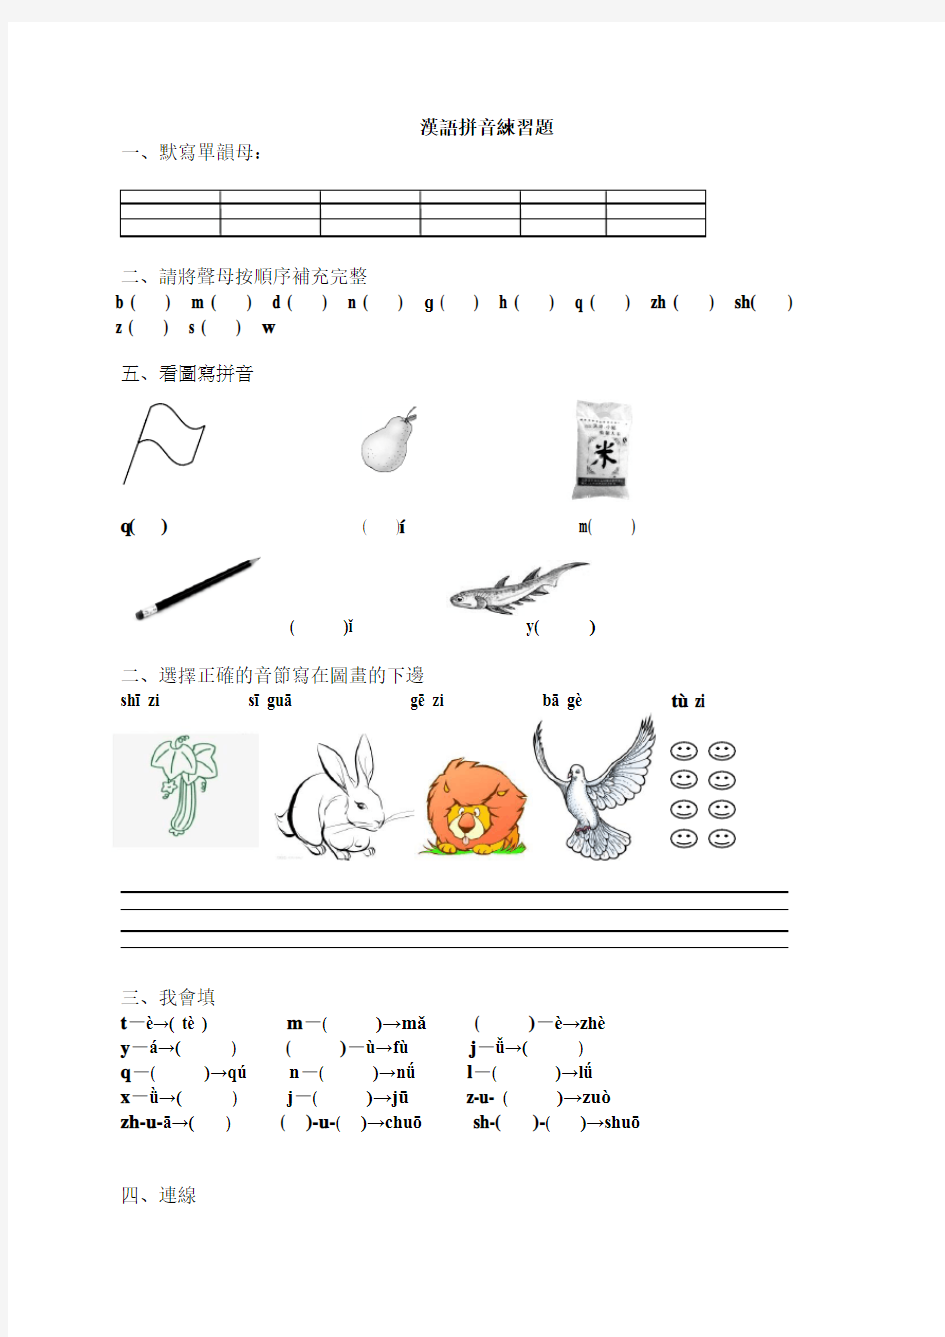 (完整)一年级汉语拼音练习题(声母、单韵母)